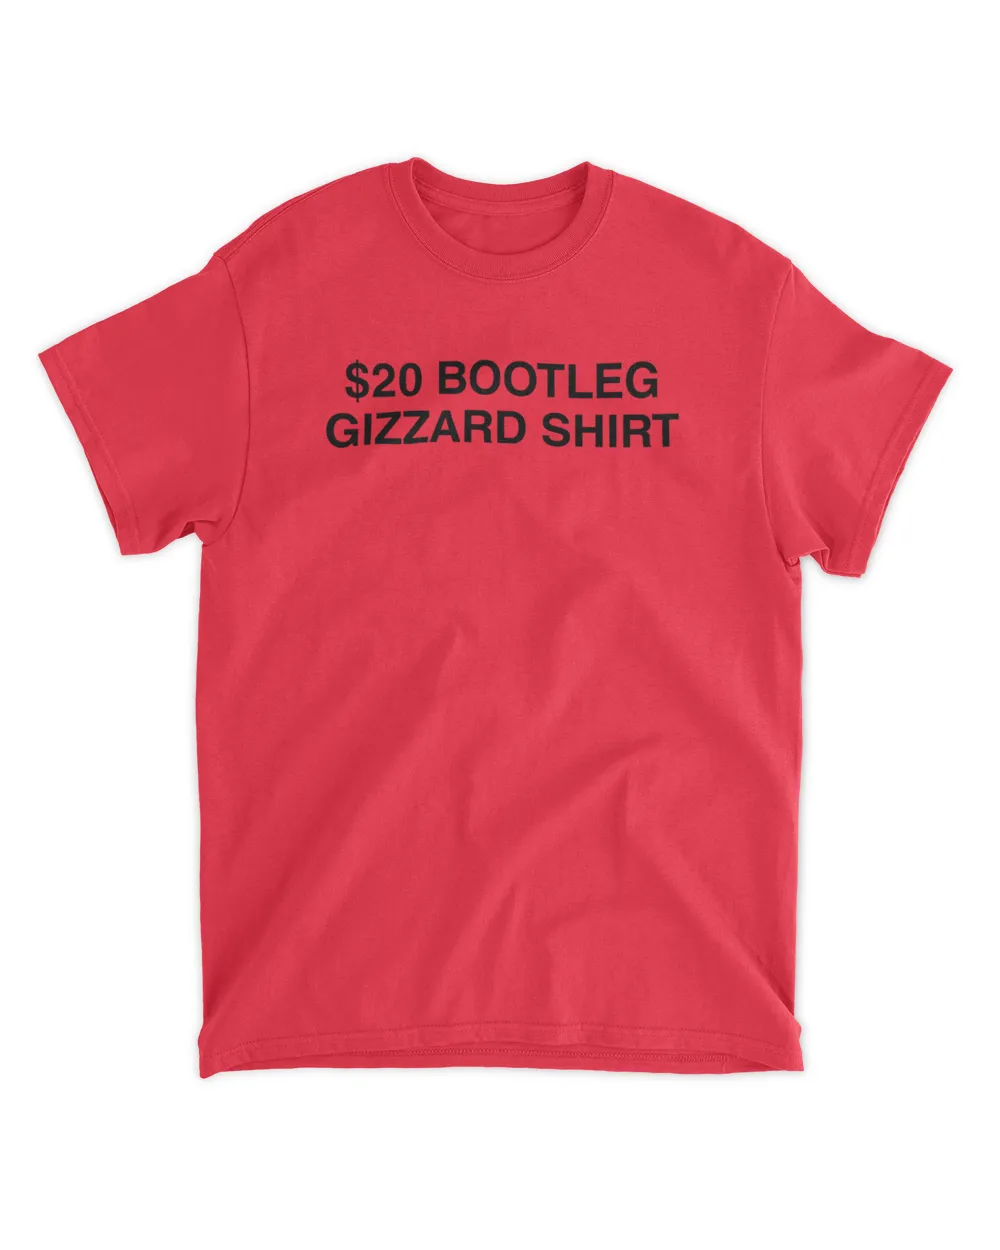 $20 Bootleg Gizzard Shirt T Shirt King Gizzard And The Lizard Wizard